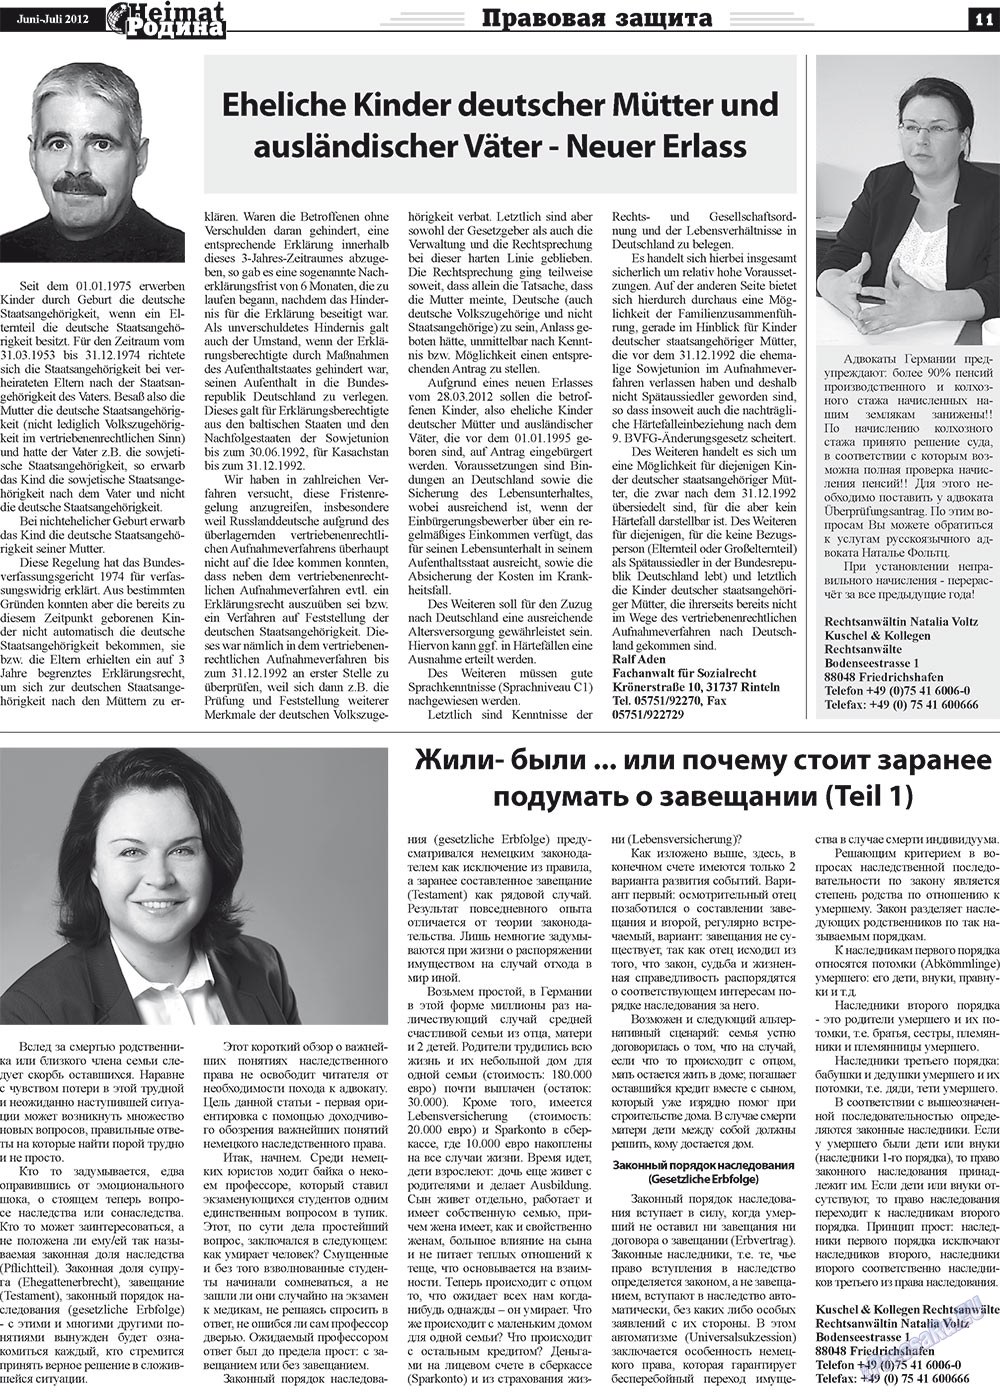 Heimat-Родина (газета). 2012 год, номер 5, стр. 11